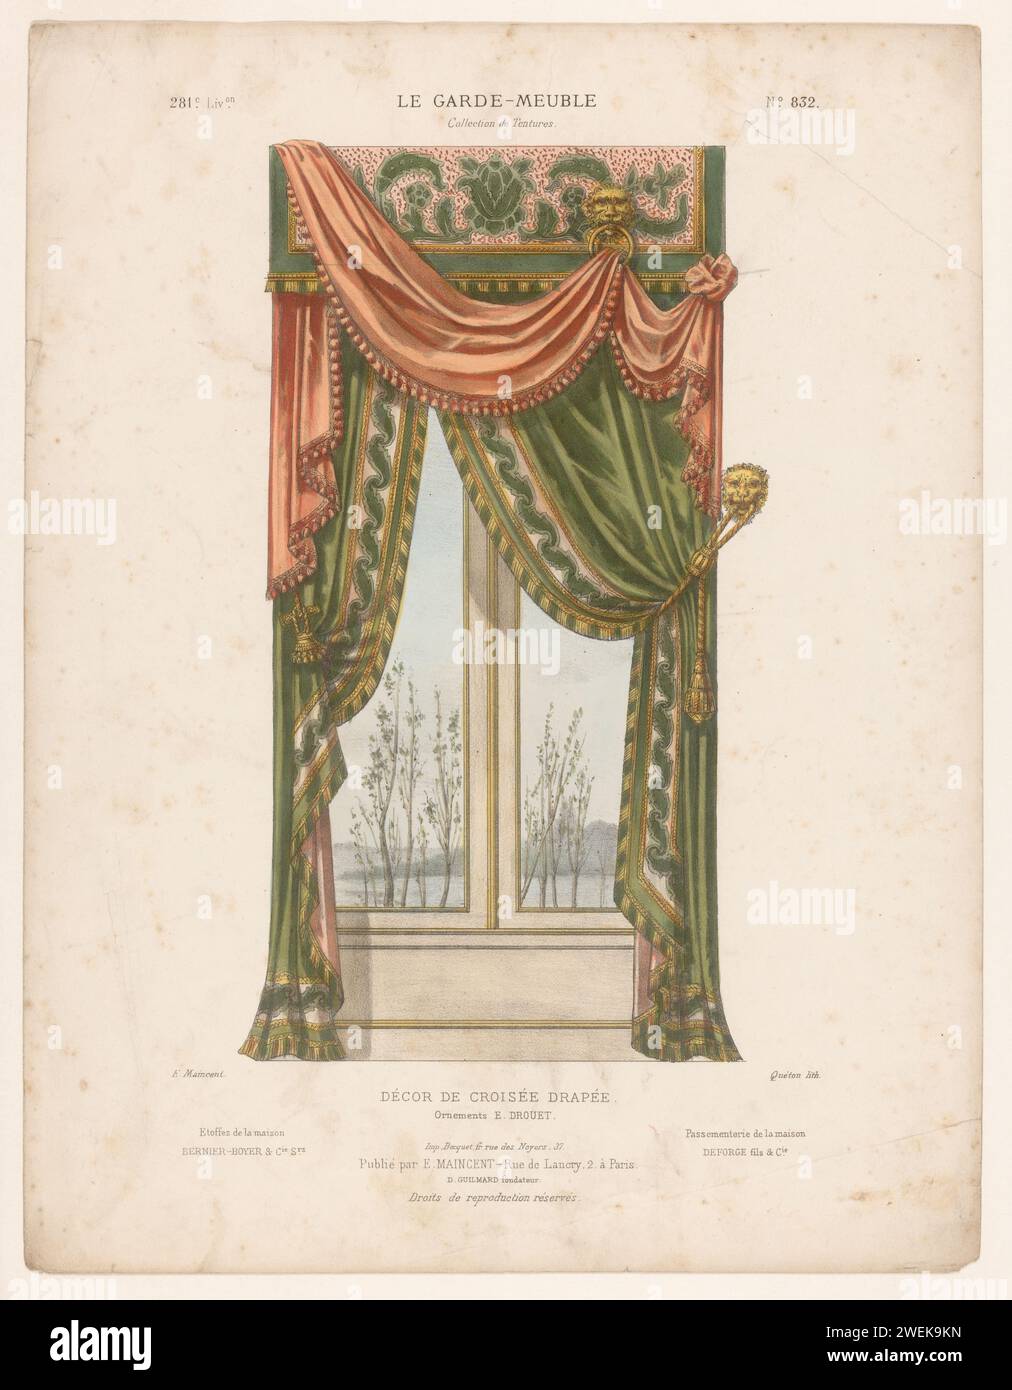 Fenster mit Vorhängen, Quéton, nach Eugène MAINCEN, ca. 1885 - ca. 1895 Druck Kreuzfenster mit Vorhängen. Drucken von 281. Livraison. Papierbehänge und Vorhänge. Fenster Stockfoto